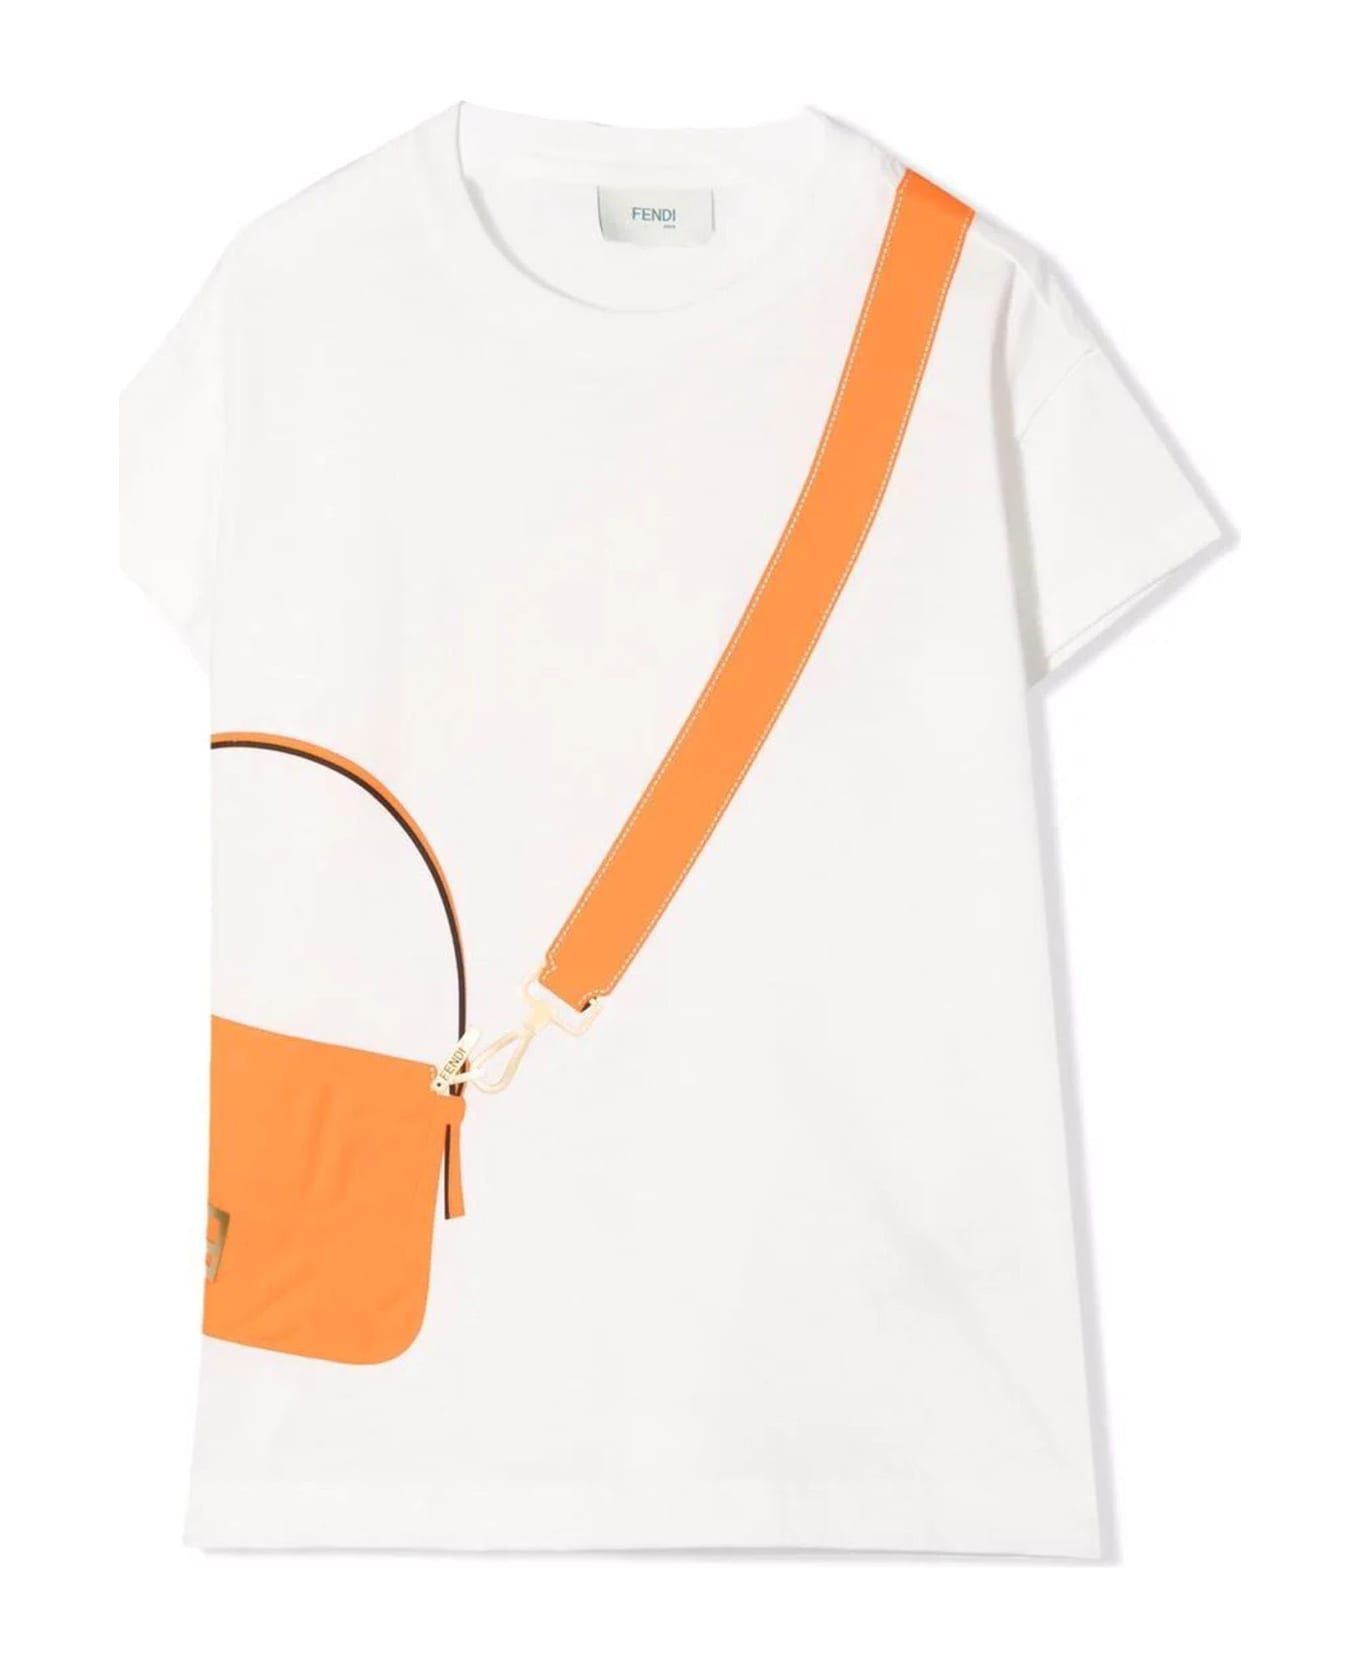 Fendi White Cotton T-shirt - Bicolore